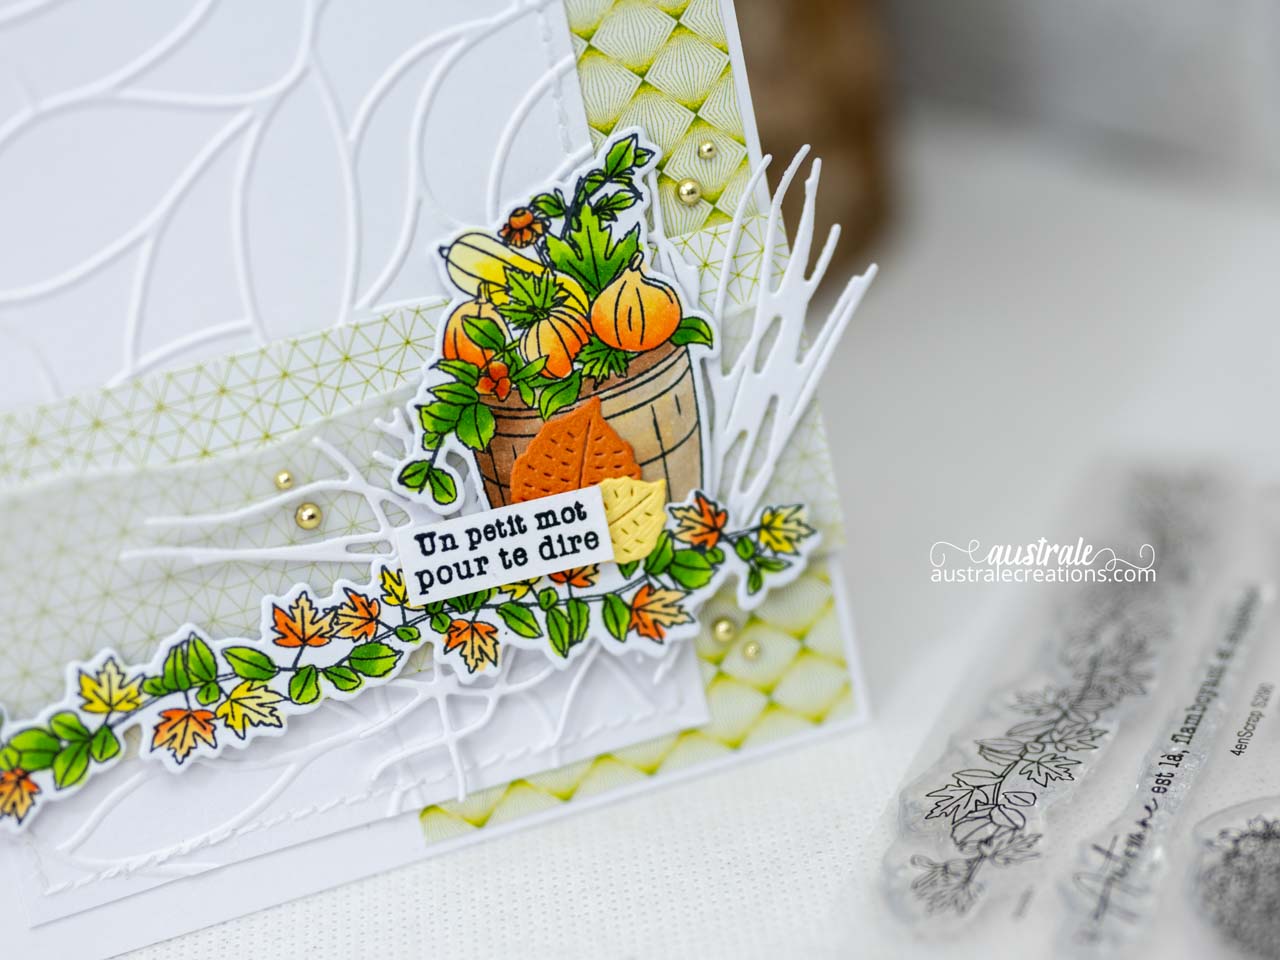 Création d'une carte d'automne avec un joli seau rempli de courges et feuillages dans un combo de couleurs en orange, jaune, vert et kraft.